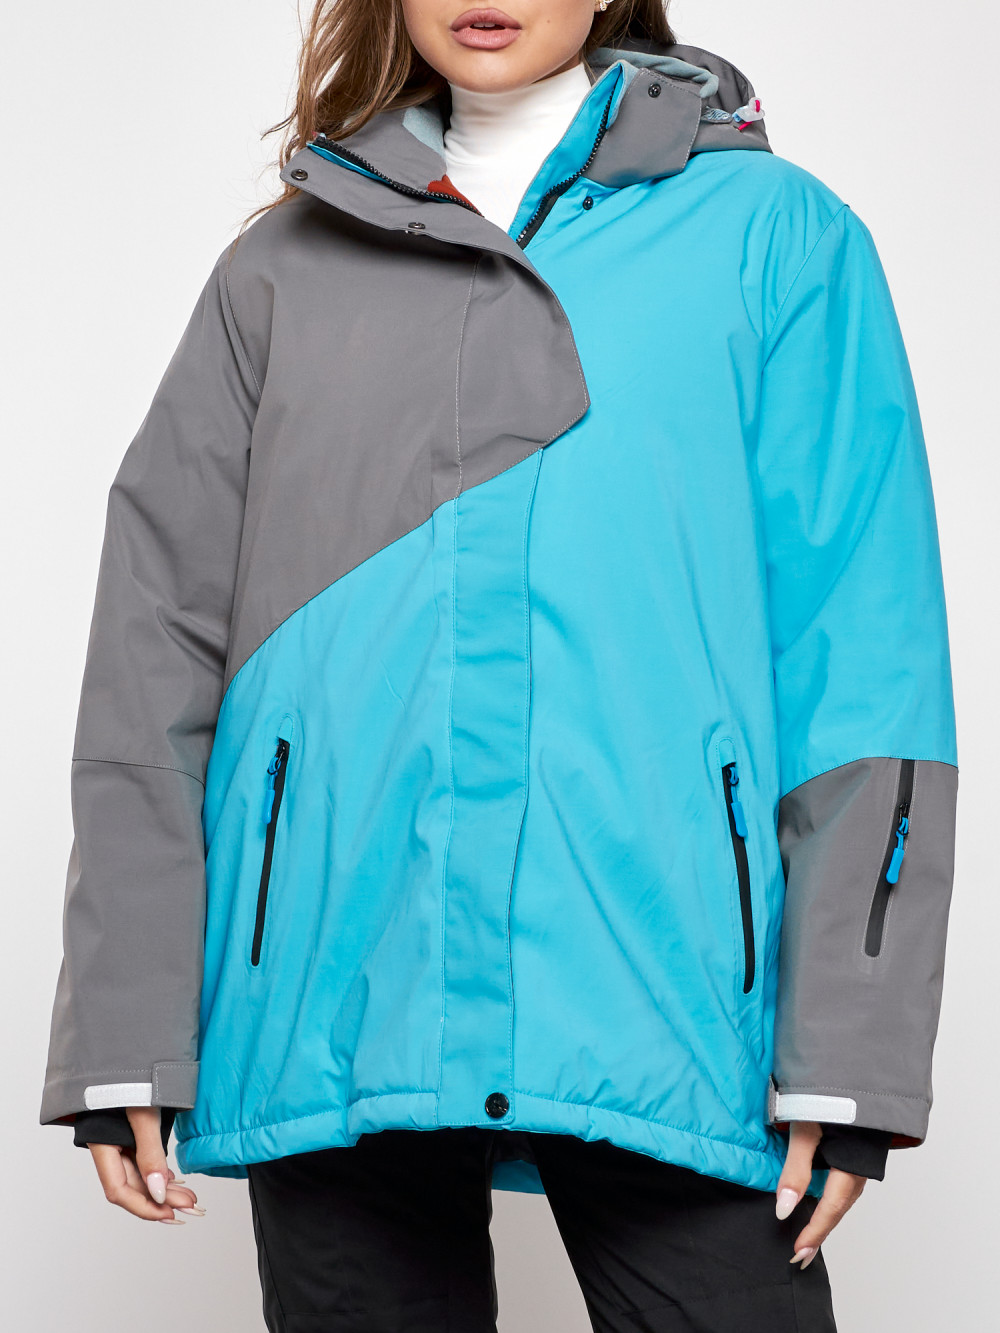 Горнолыжная куртка женская зимняя большого размера Chunmai AD2278Gl, 54